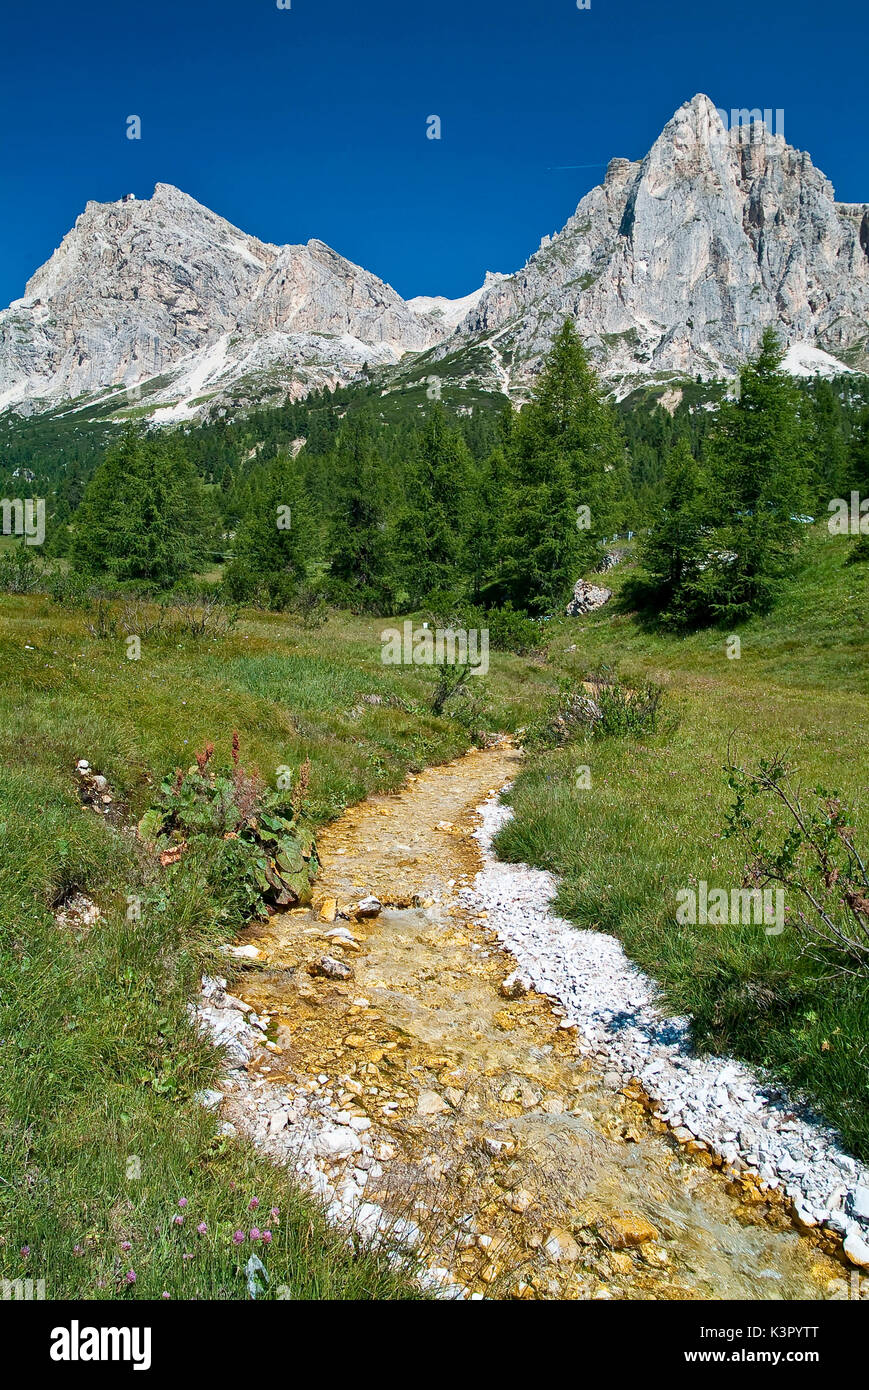 Die Lagazuoi und die Tofana di Rozes Vom Falzarego Pass gesehen. Der Pass verbindet die hohe Agordino mit Cortina d'Ampezzo durch State Route 48 der Dolomiten Trentino Alto Adige Italien Europa Stockfoto